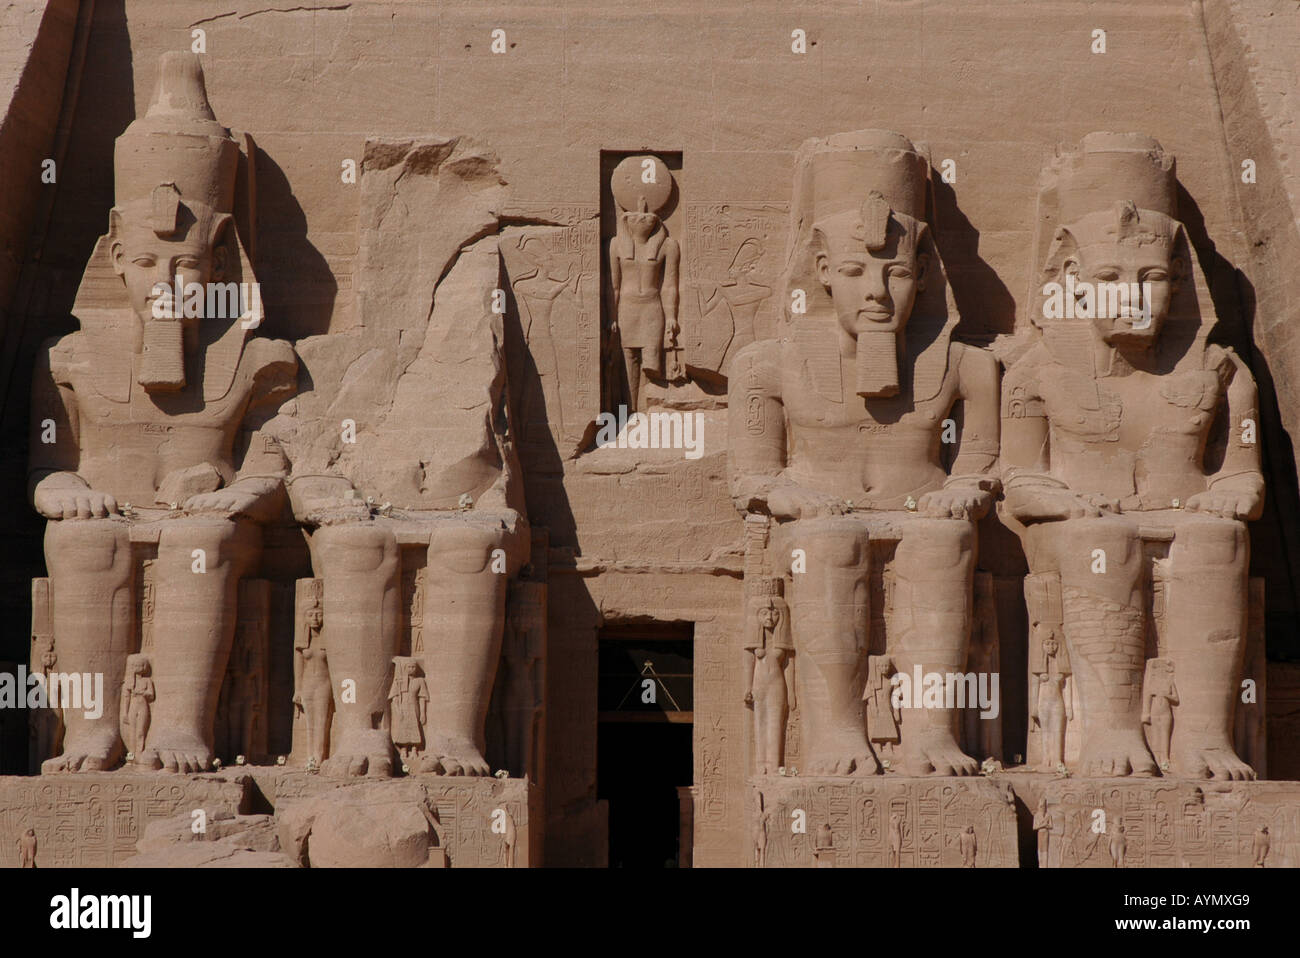 Soleil immense temple d'Abou Simbel décoré par 20 mètres de hauteur colosses de Ramsès II près d'Assouan, Egypte Banque D'Images